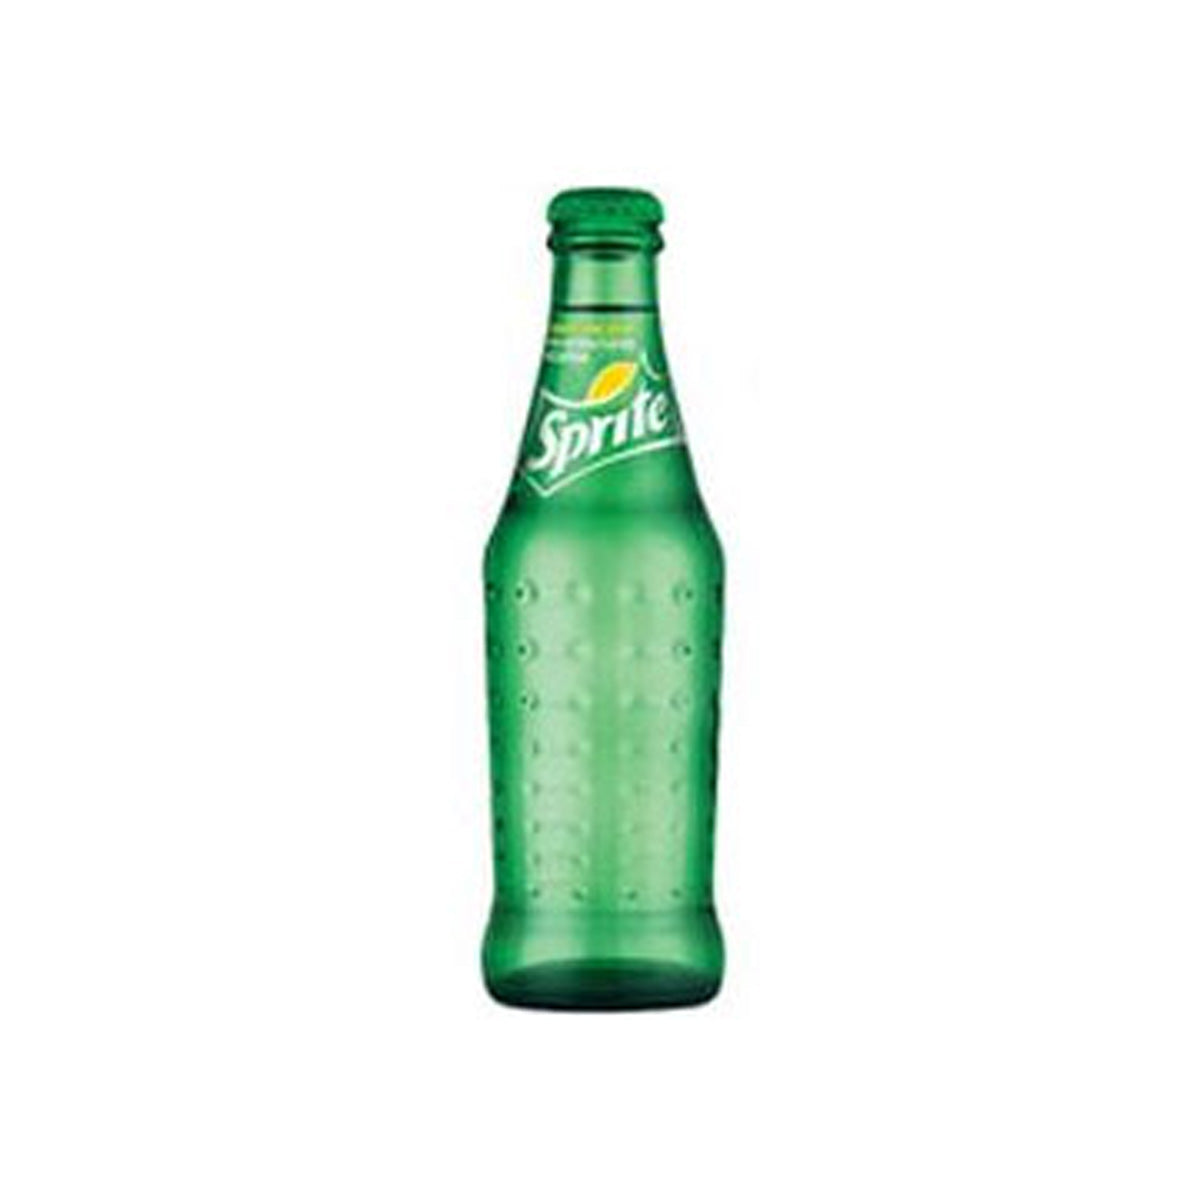 Sprite Lemon-Lime Soda Glass Bottle 8 Oz Bottle